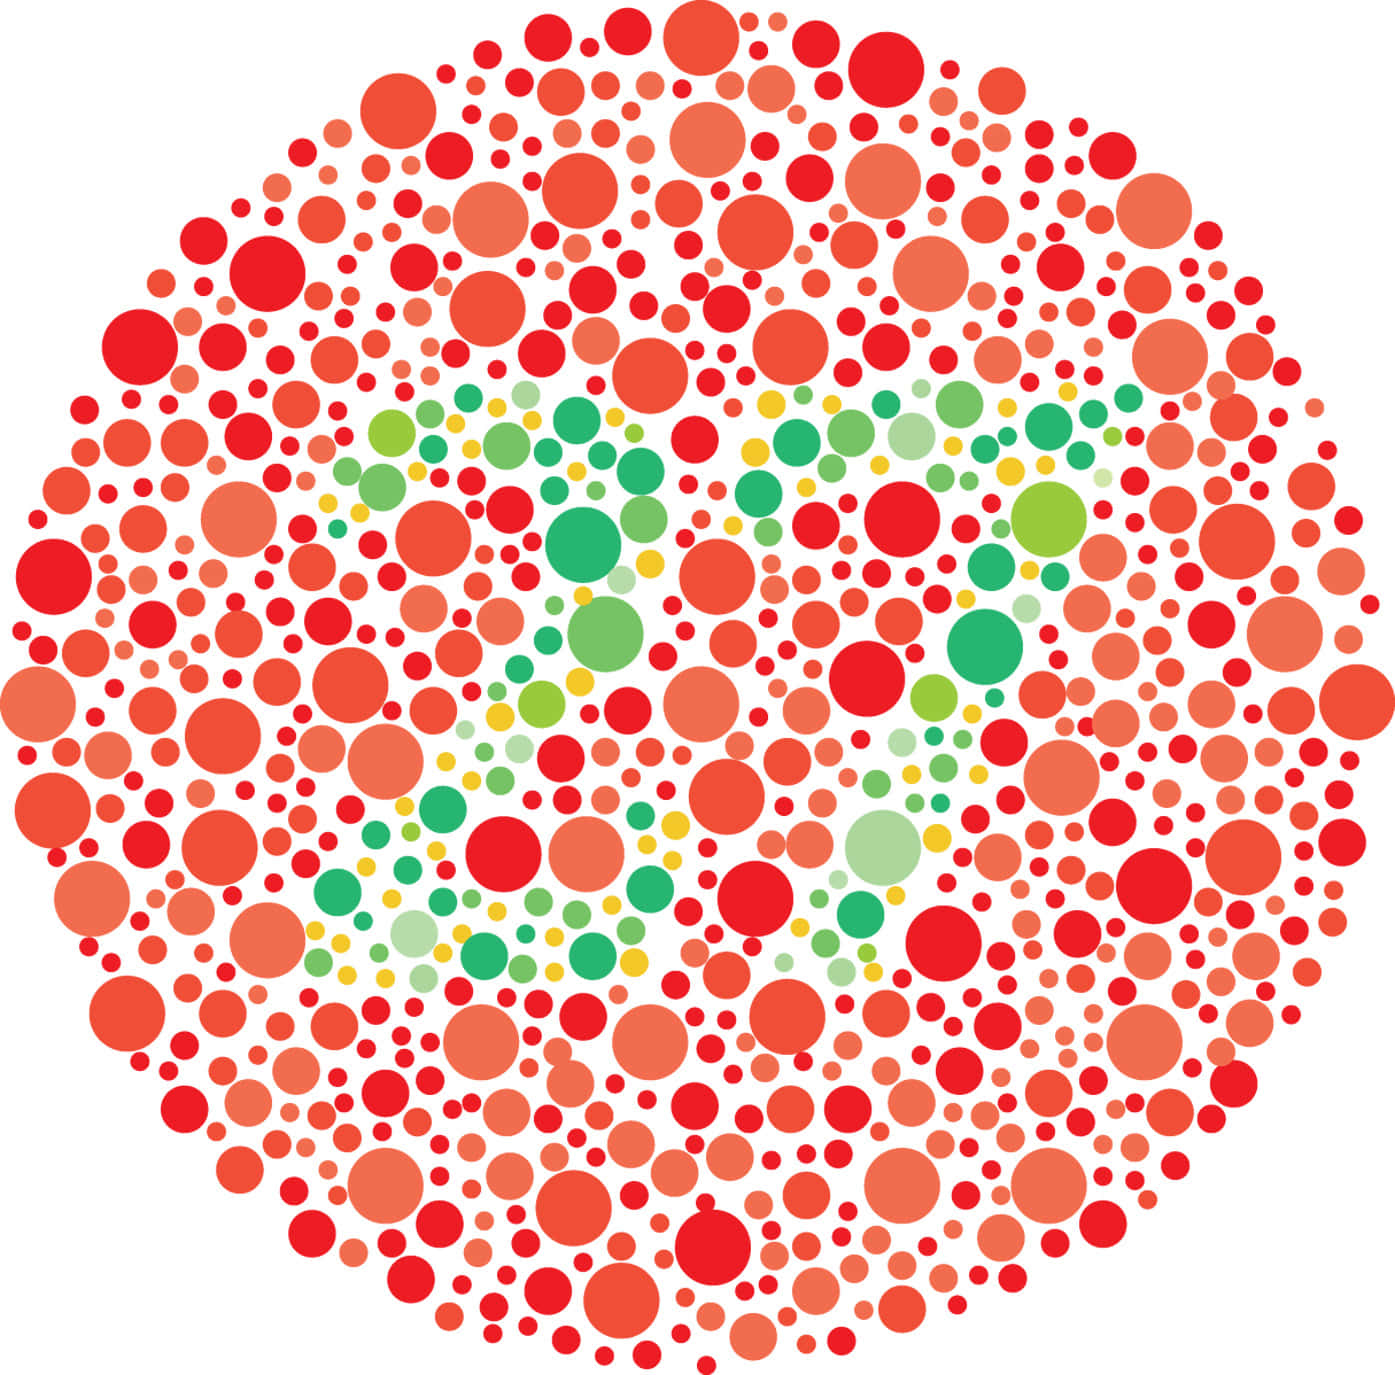 Et rødt og grønt cirkel med prikker